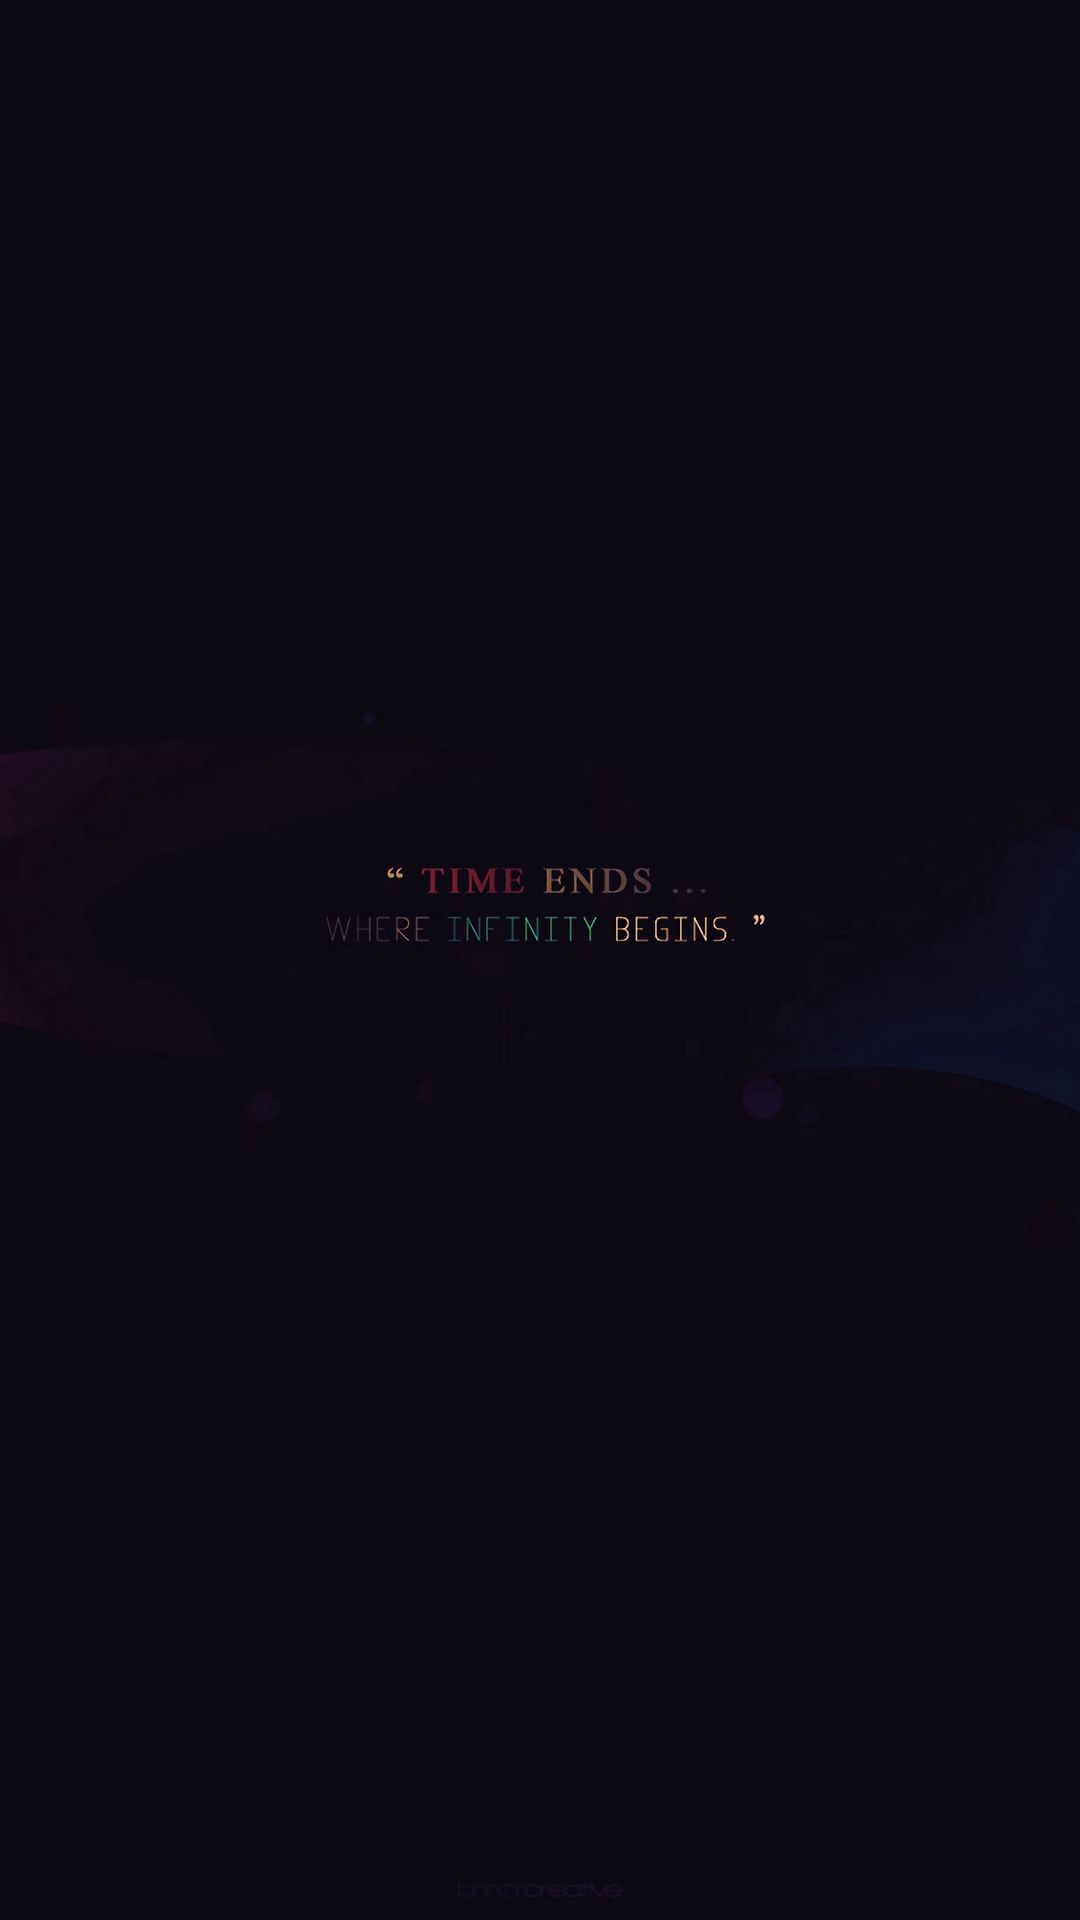 infinity quotes